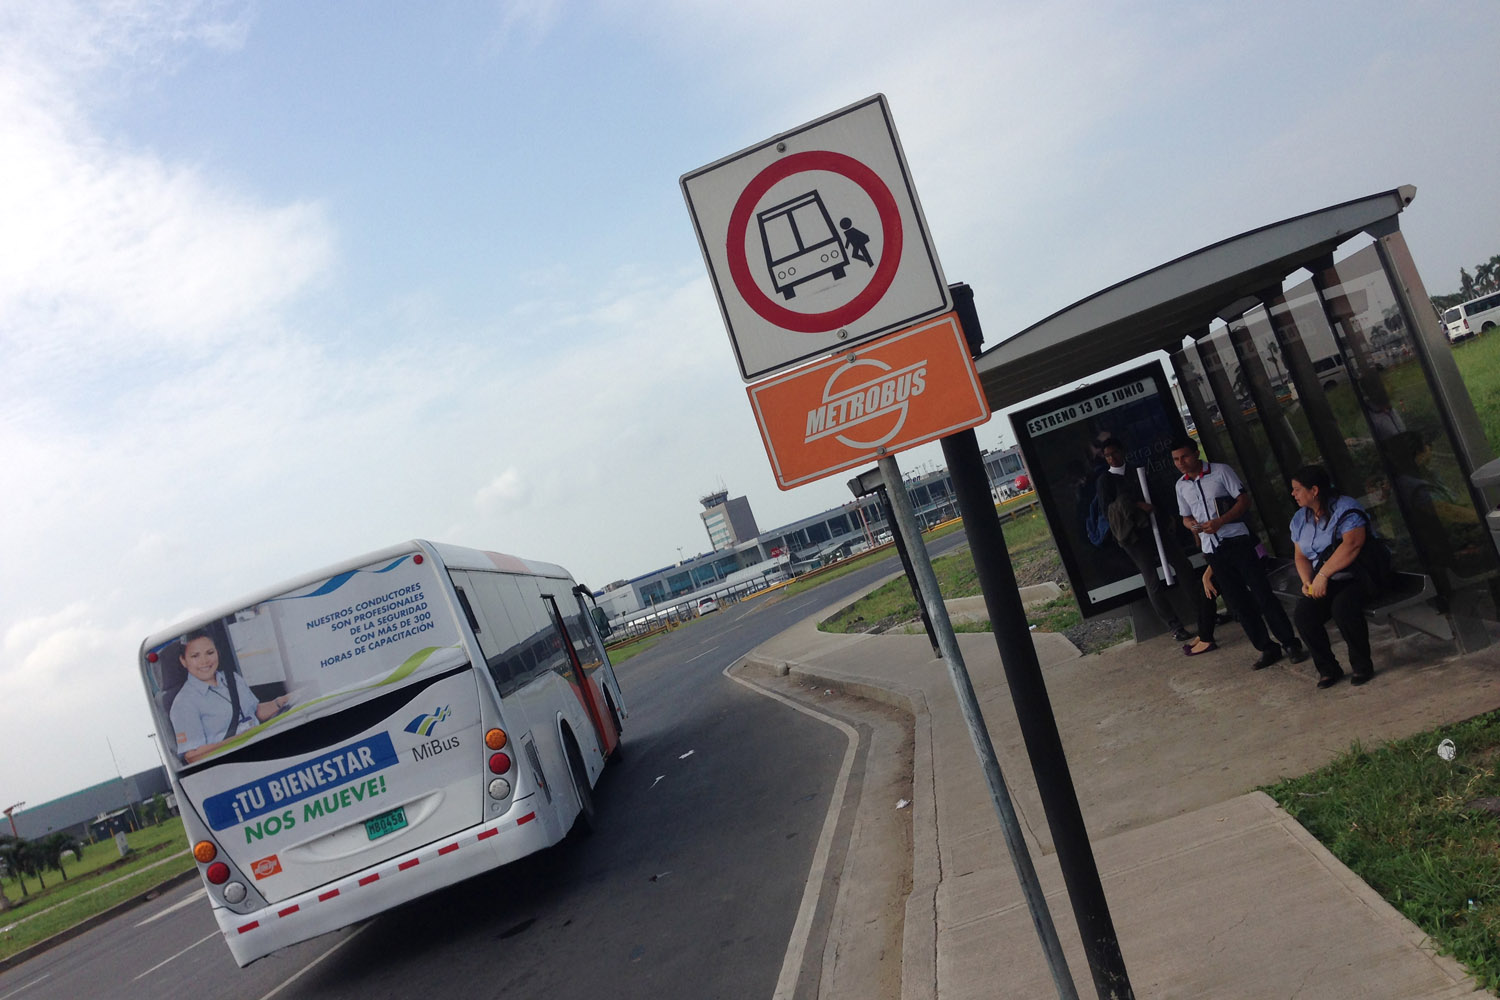 Parada de autobús del aeropuerto de Tocumen, Panamá